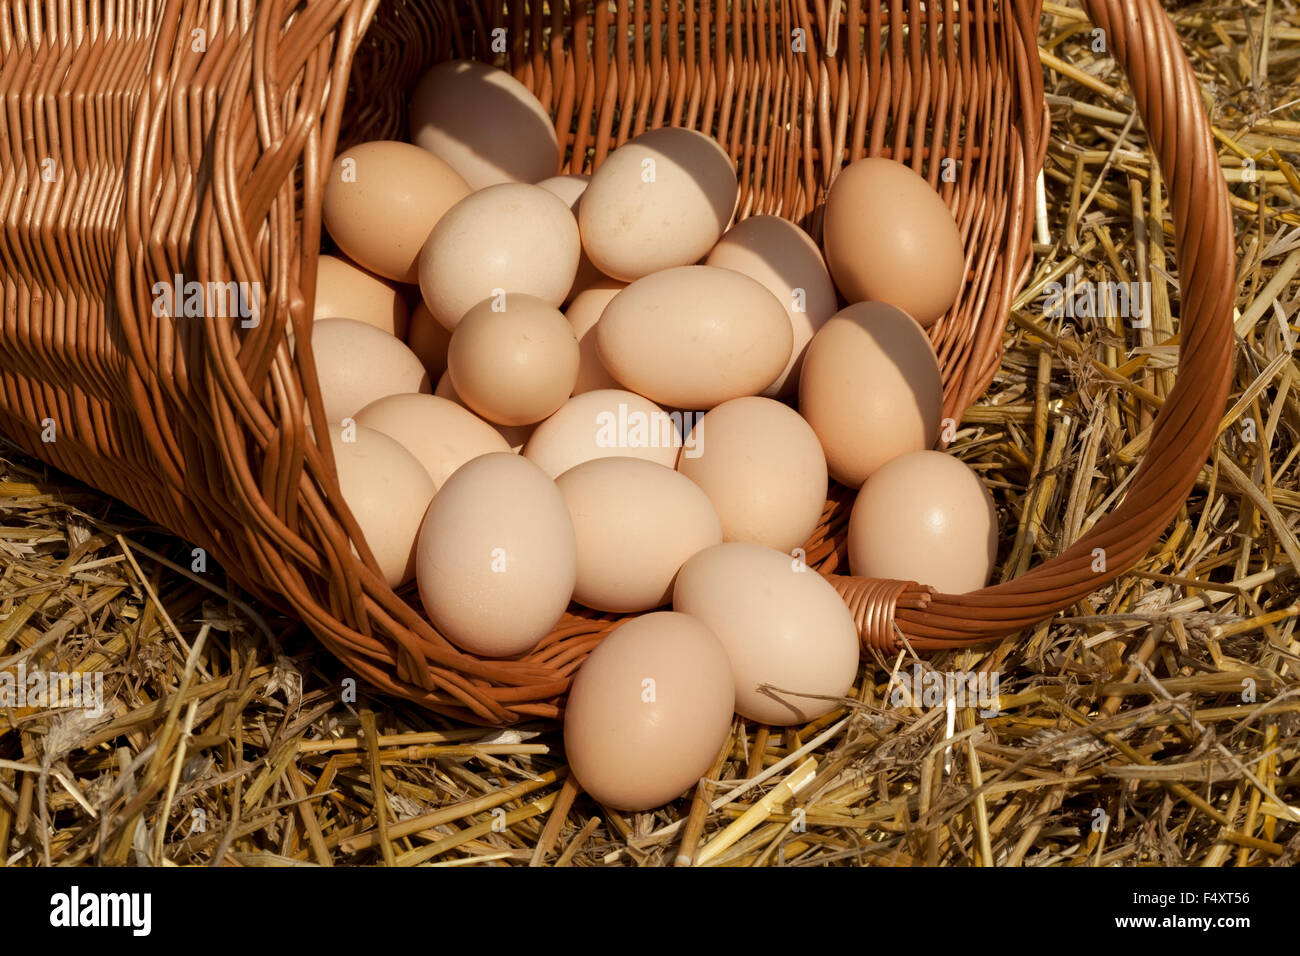 ein Großteil der Menge an Eiern Land auf Stroh in Korb Stockfoto